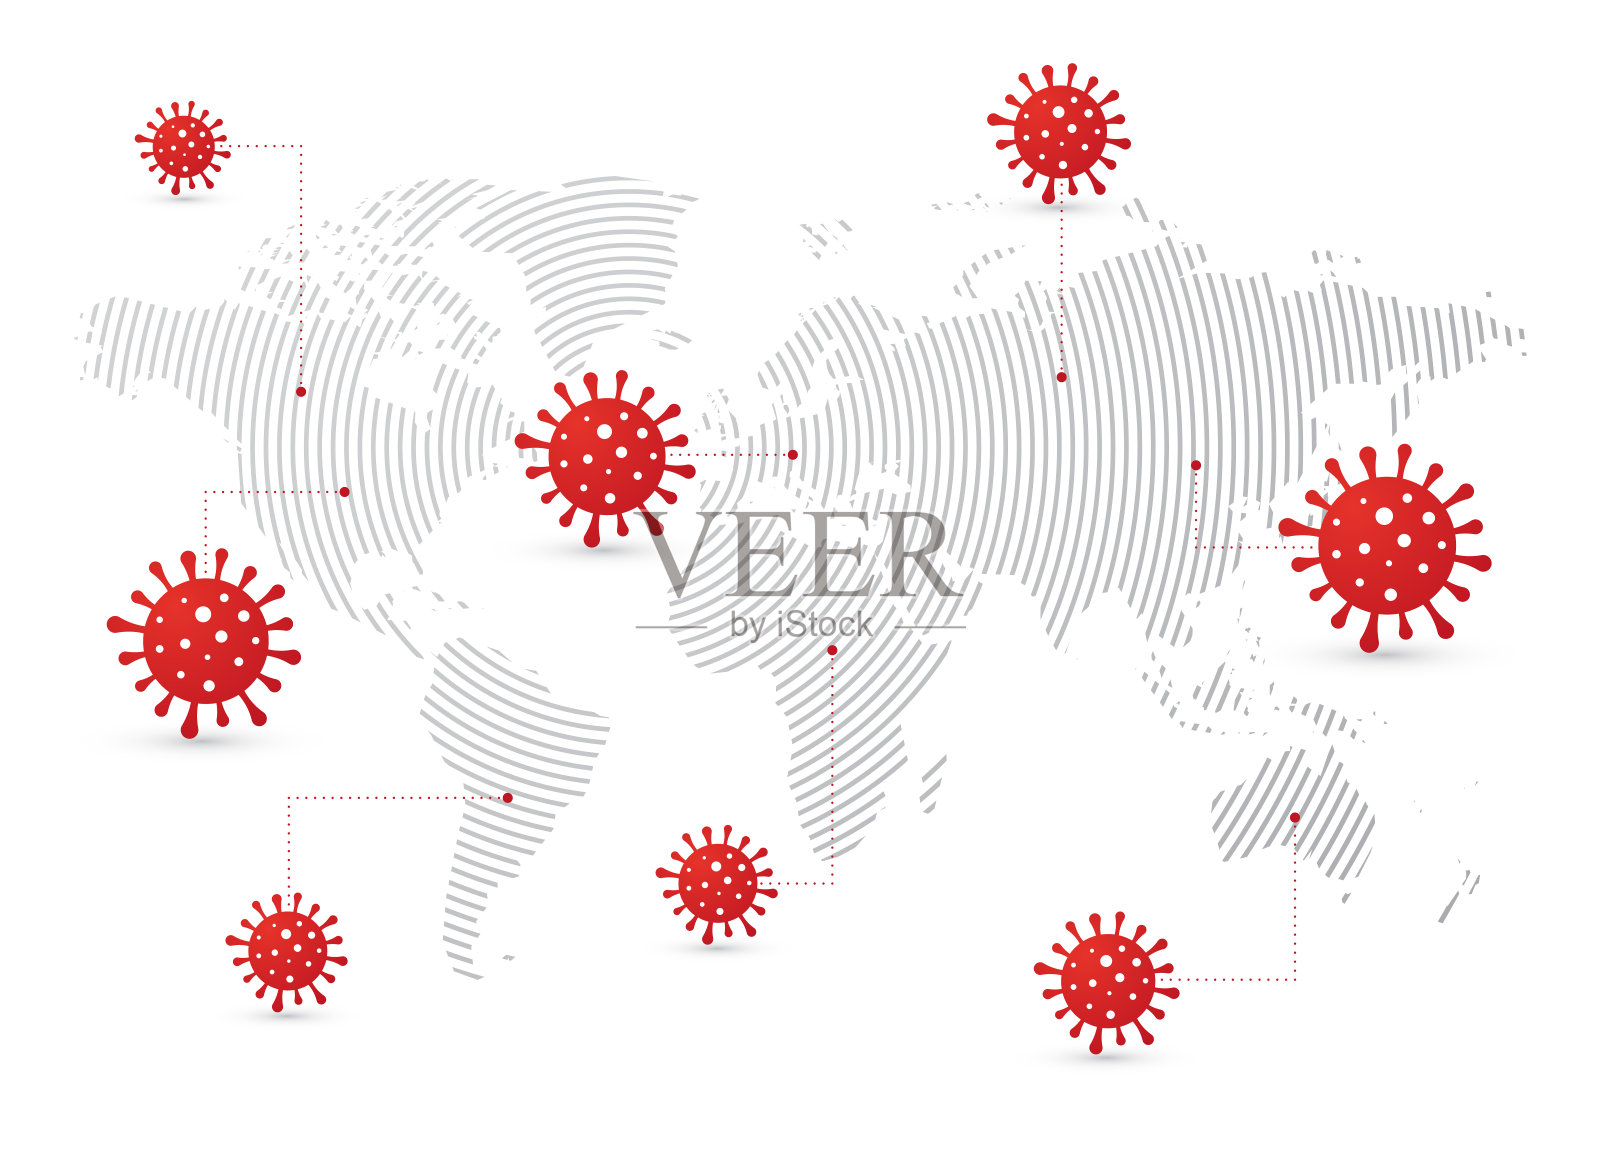 用红色符号标出COVID-19病毒的世界疫情传播地图插画图片素材